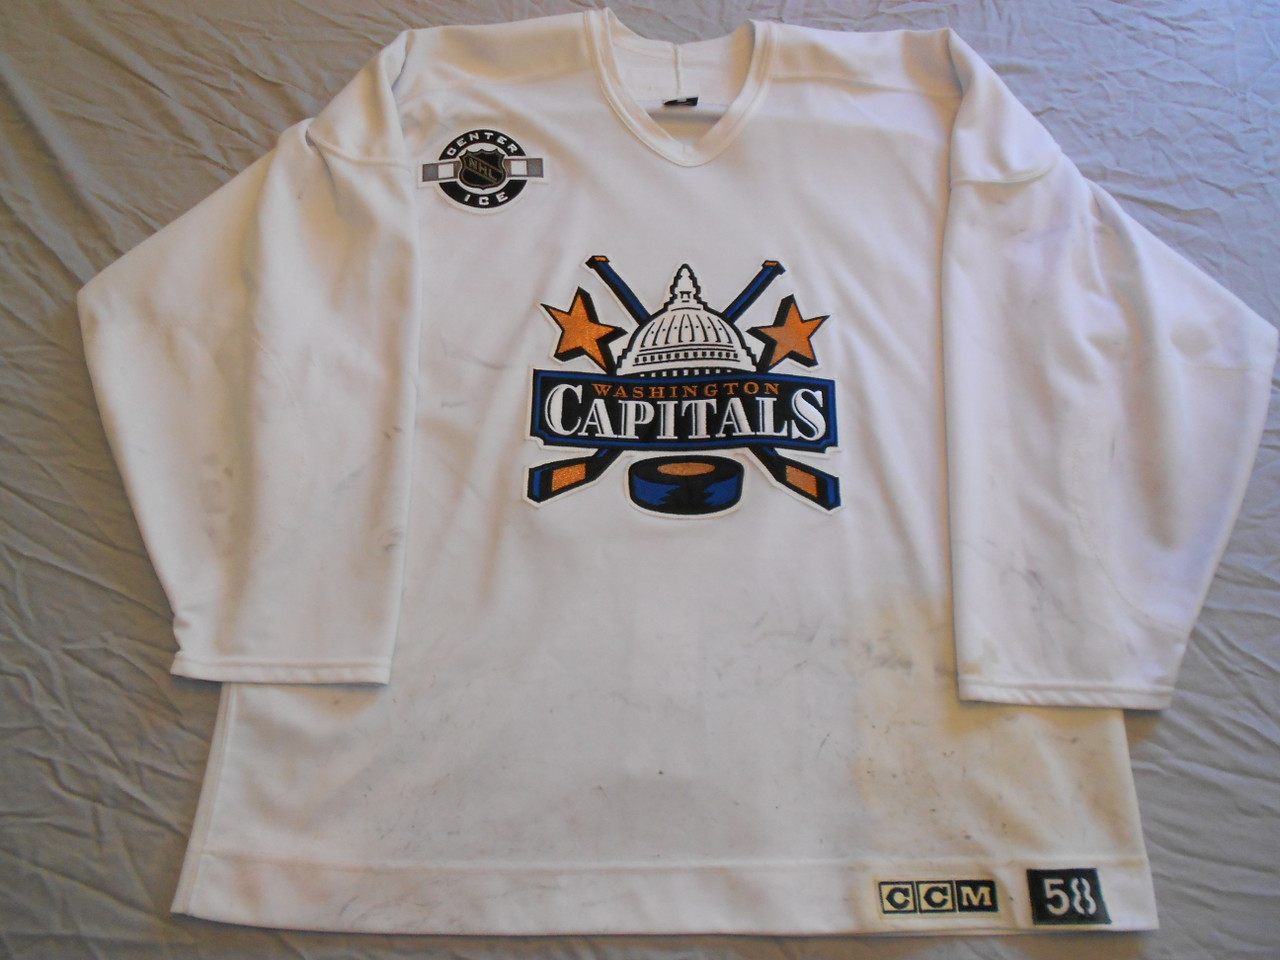 Washington Capitals Sweatshirts in Washington Capitals Team Shop